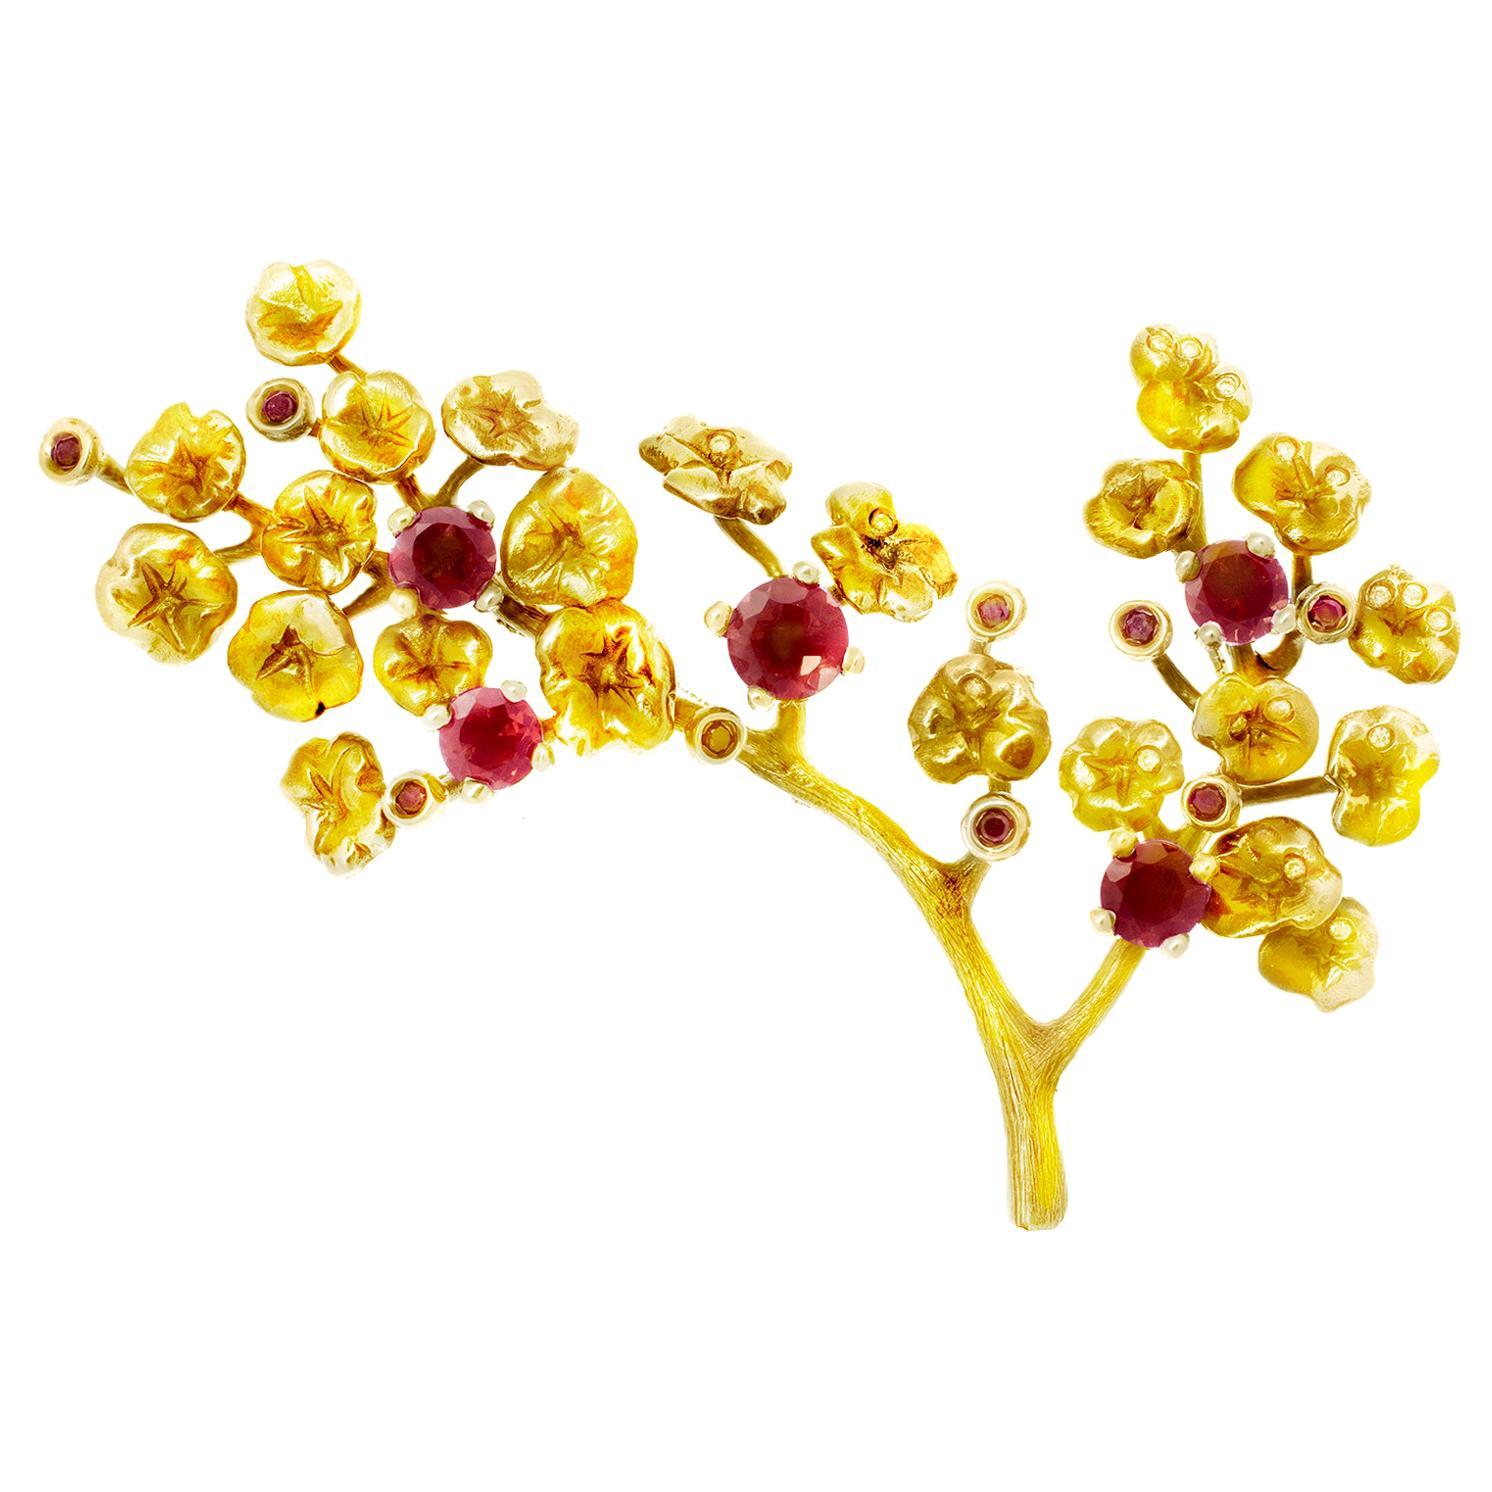 Zeitgenössische Heliotrop-Brosche aus Gelbgold mit rosaroten Rubinen und Diamanten